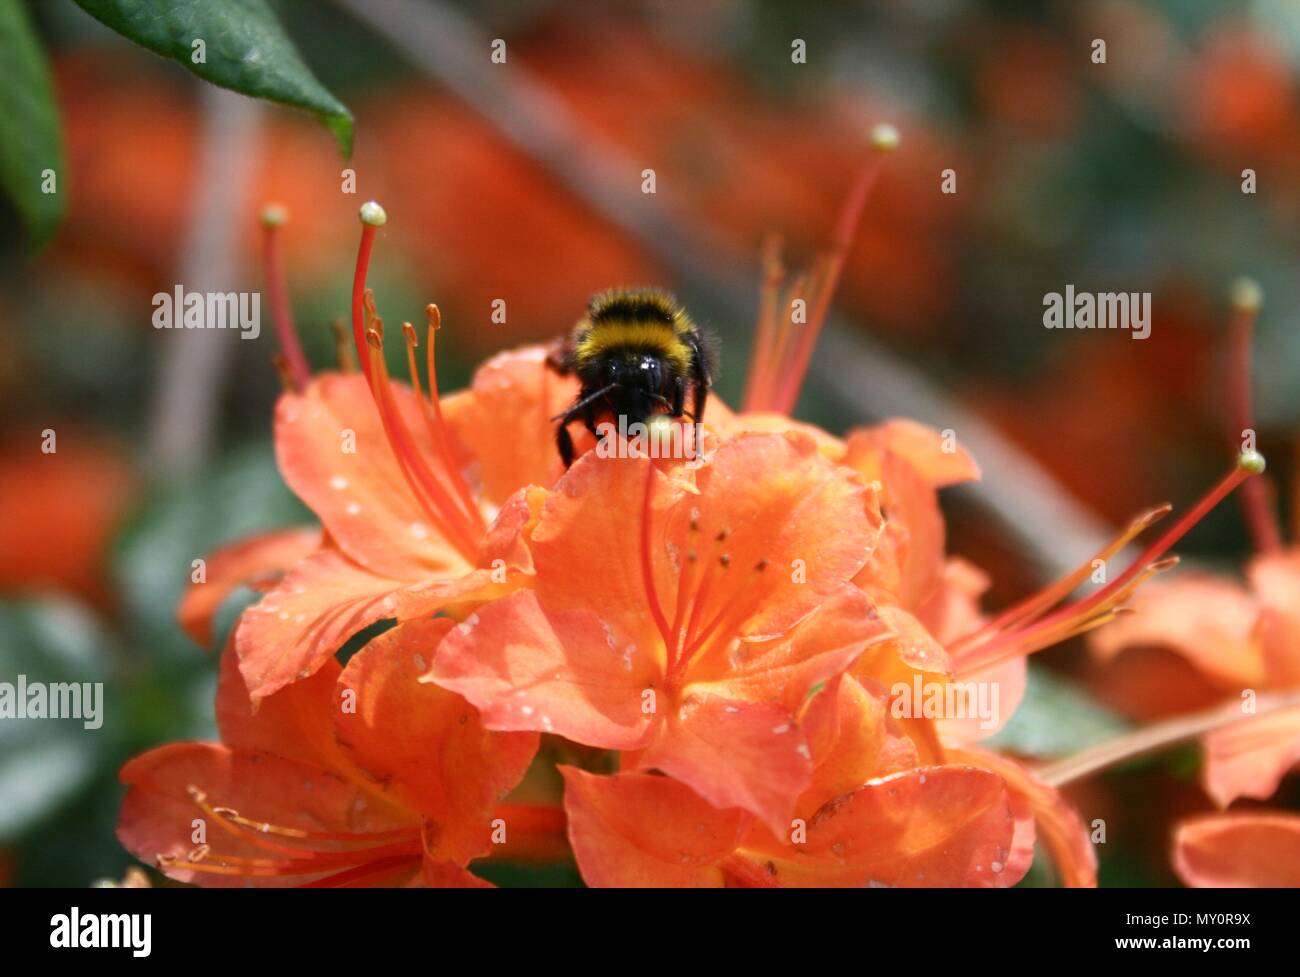 Bombus raccoglie il nettare e polline su un arancio azalea su una sfocatura sullo sfondo, close up Foto Stock